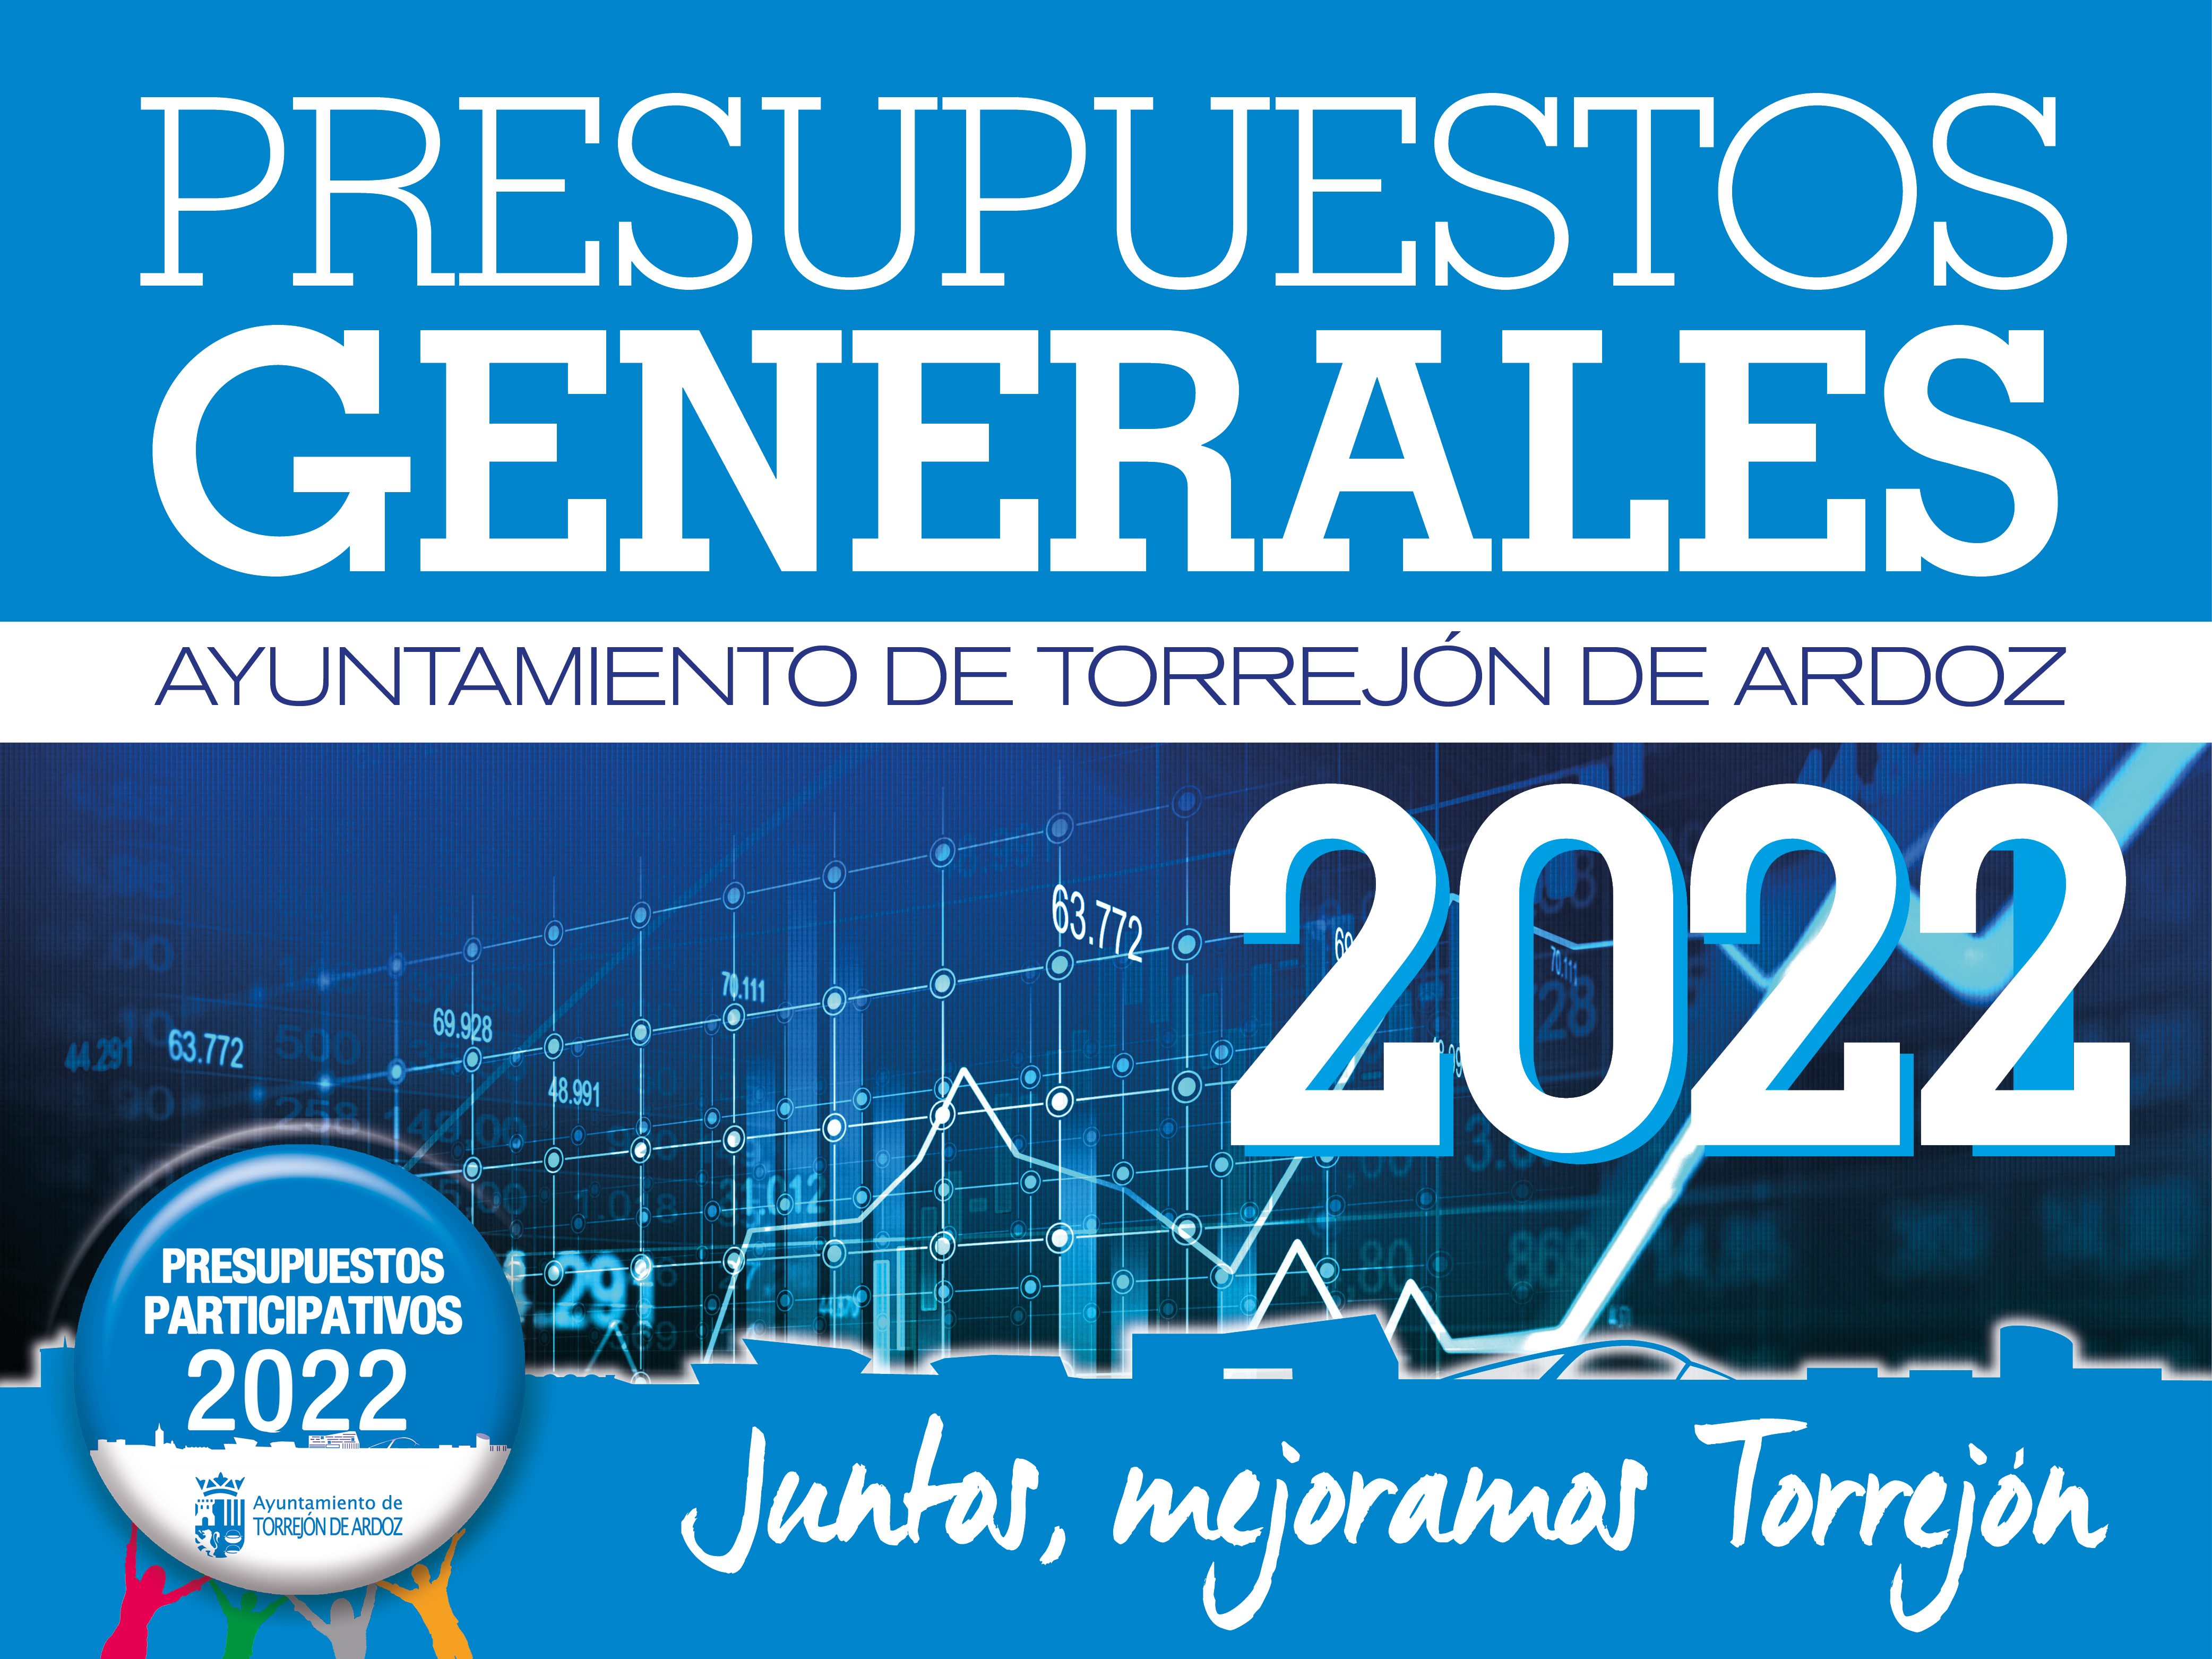 Aprobados inicialmente los Presupuestos del Ayuntamiento de Torrejón de Ardoz para 2022 ascienden a 120.619.580 de euros para consolidar el proceso de mejora y transformación de la ciudad